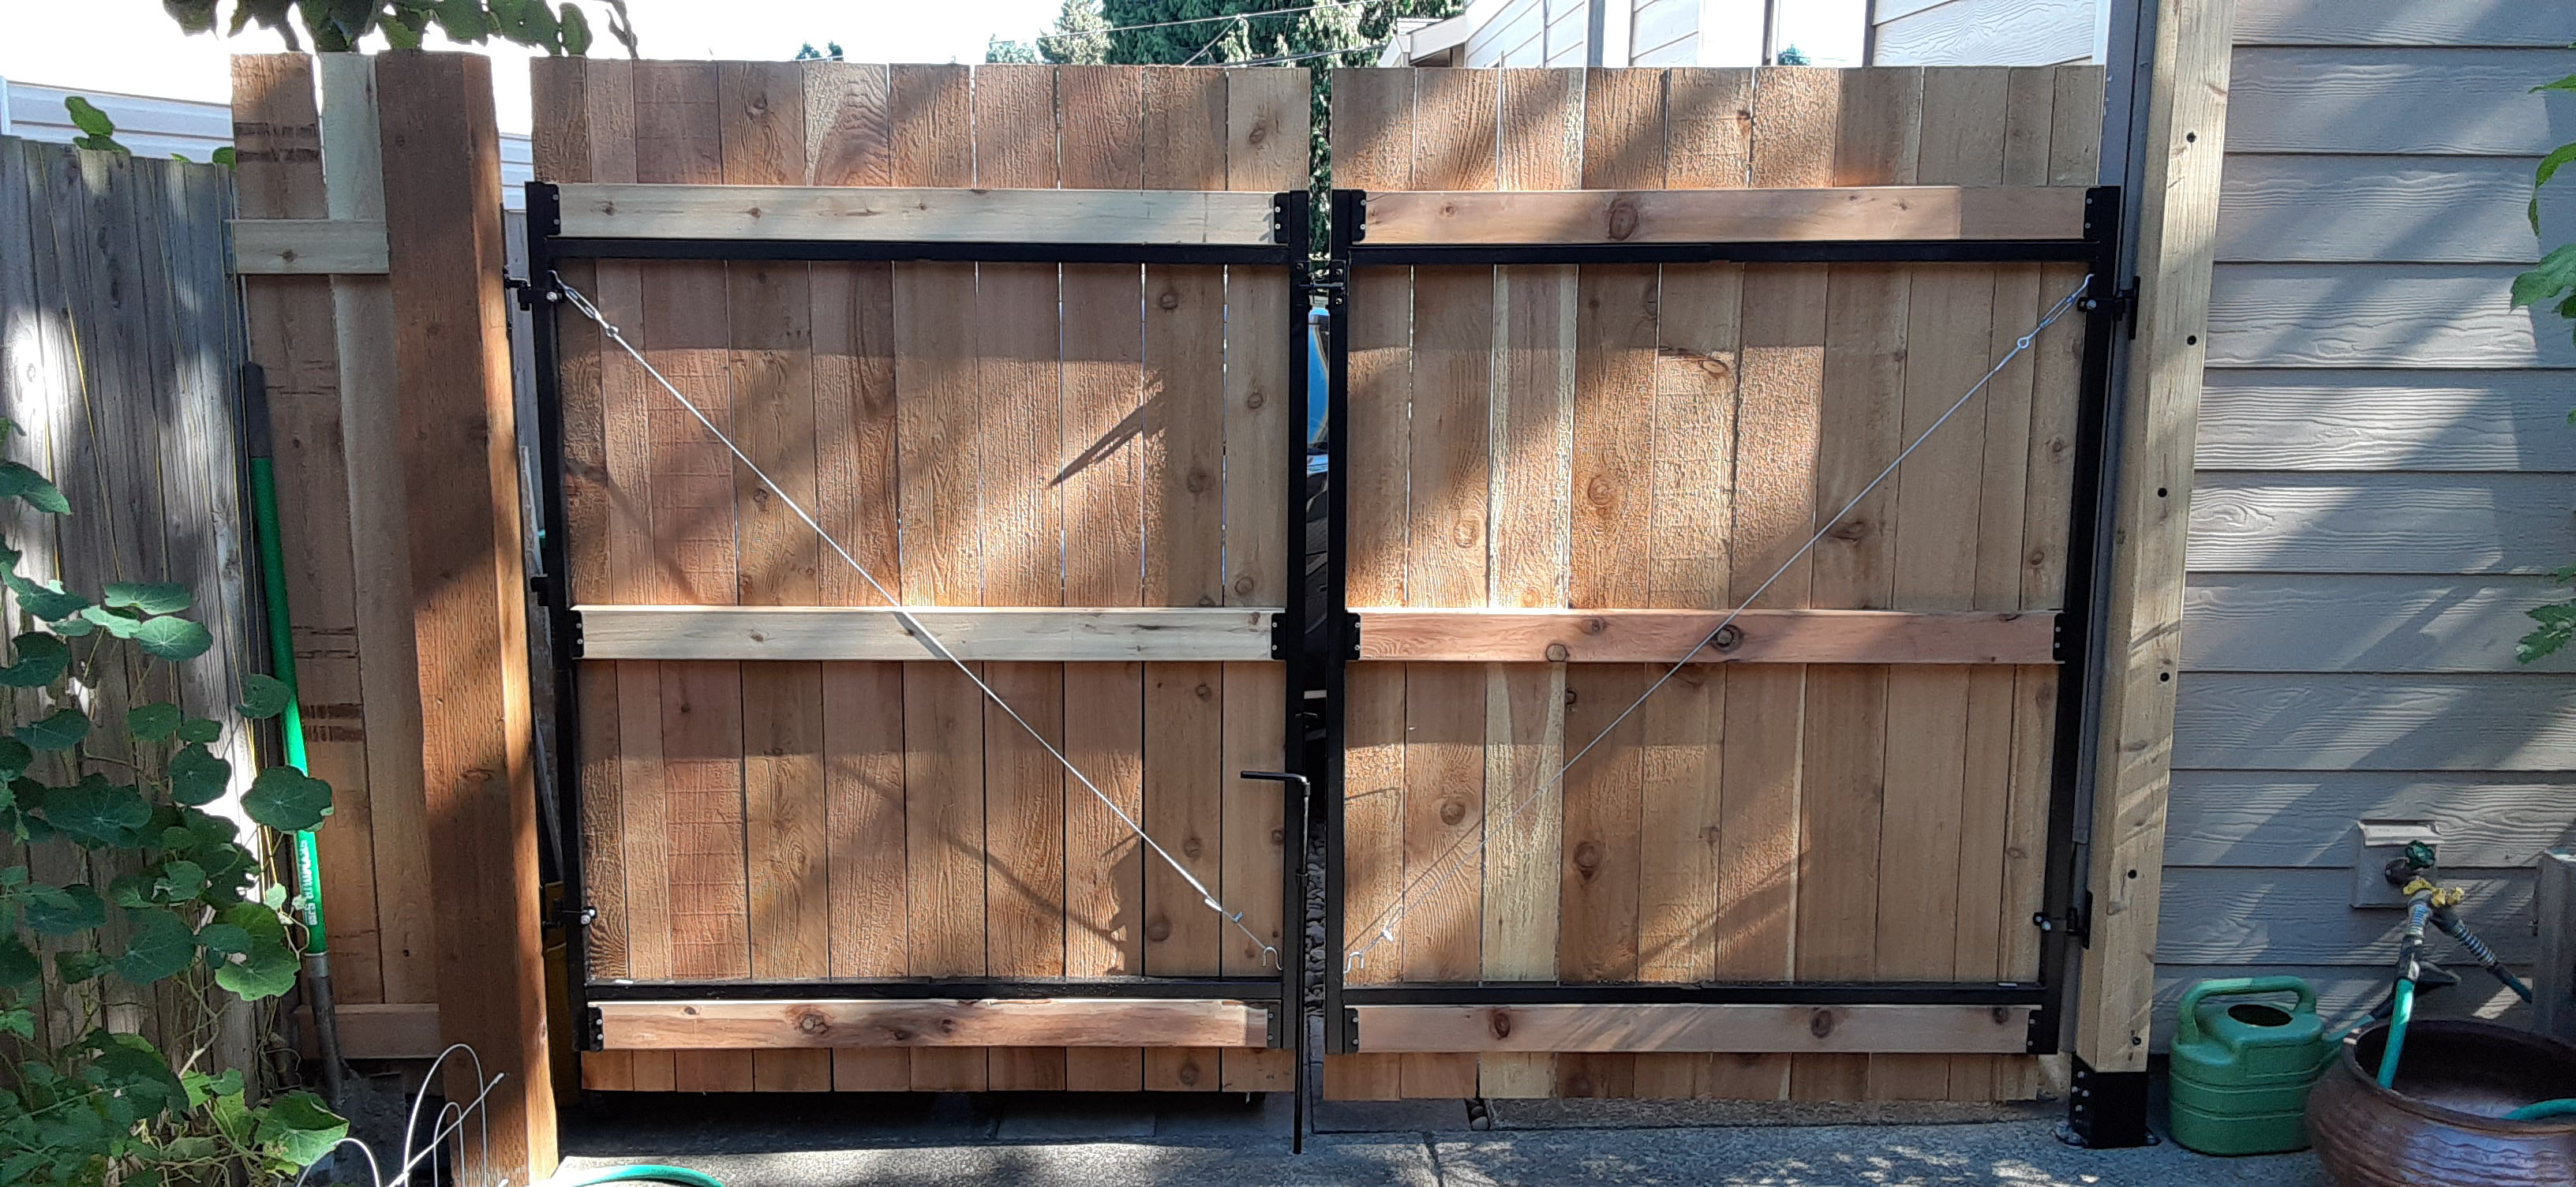 New custom built double door fence gate